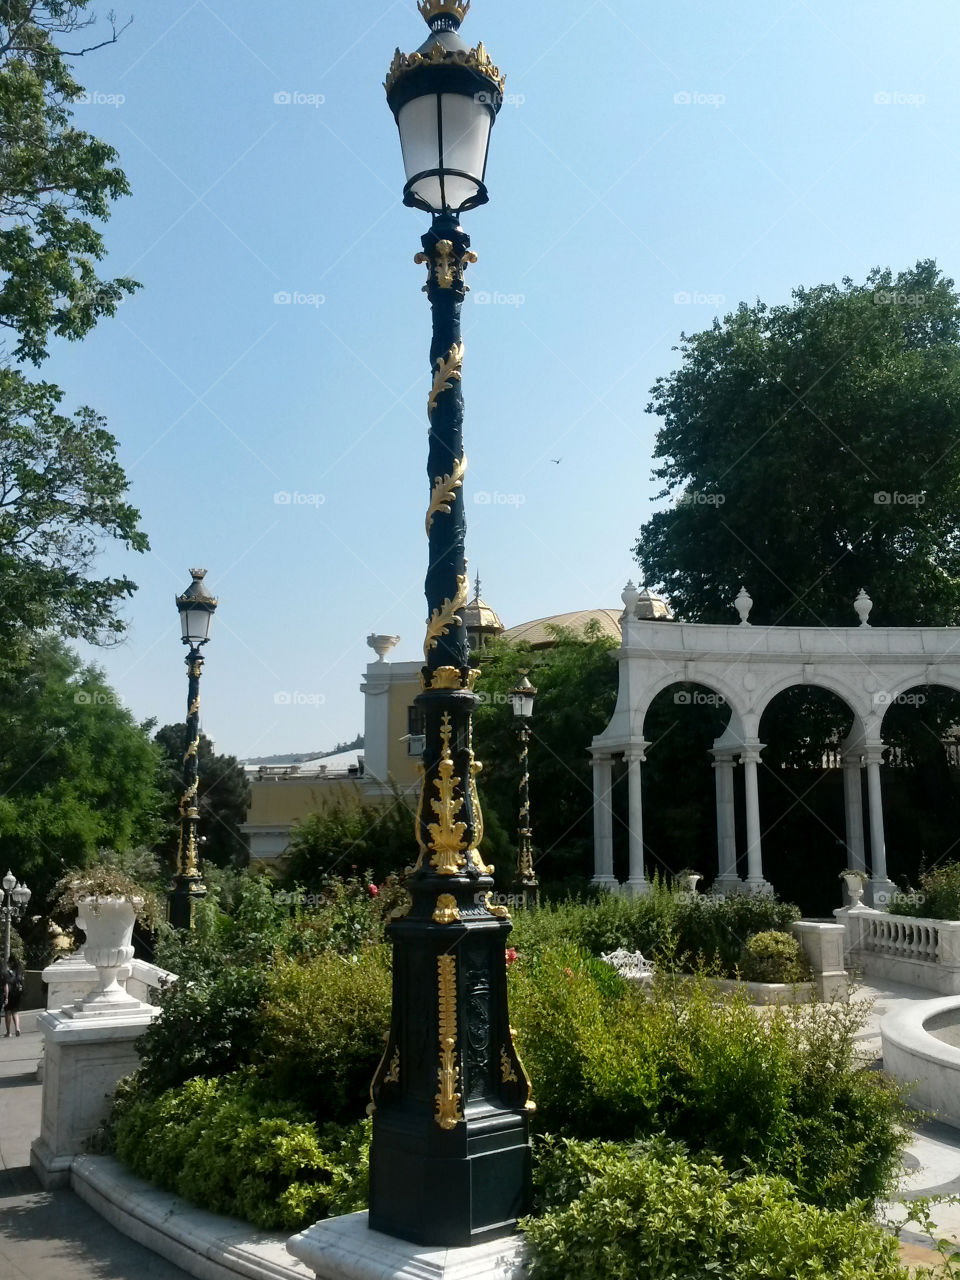 Lamp post in square